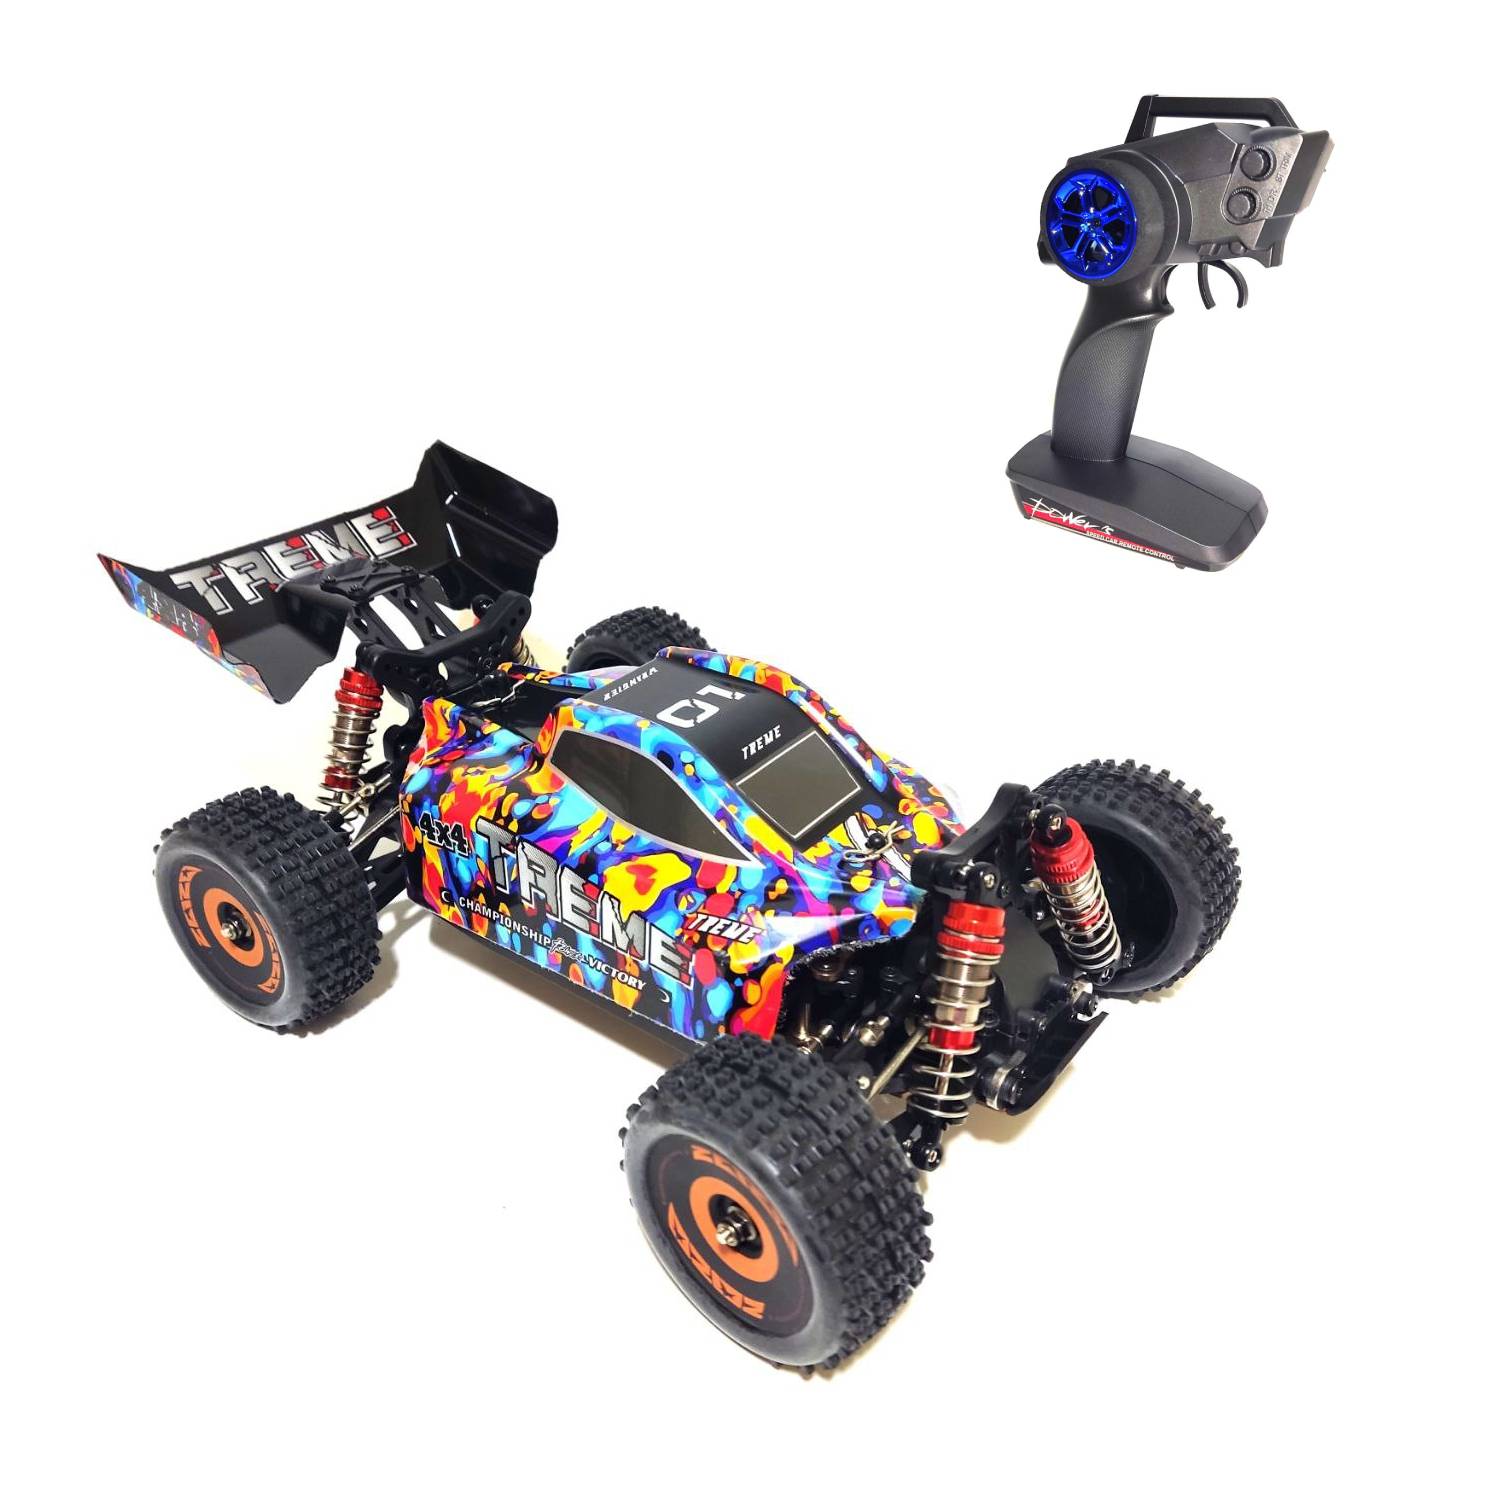 Радиоуправляемый багги WL Toys Brushless 4WD RTR масштаб 1:18 2.4G WLT-184016 радиоуправляемый багги hsp 94207 1230380 масштаб 1 10